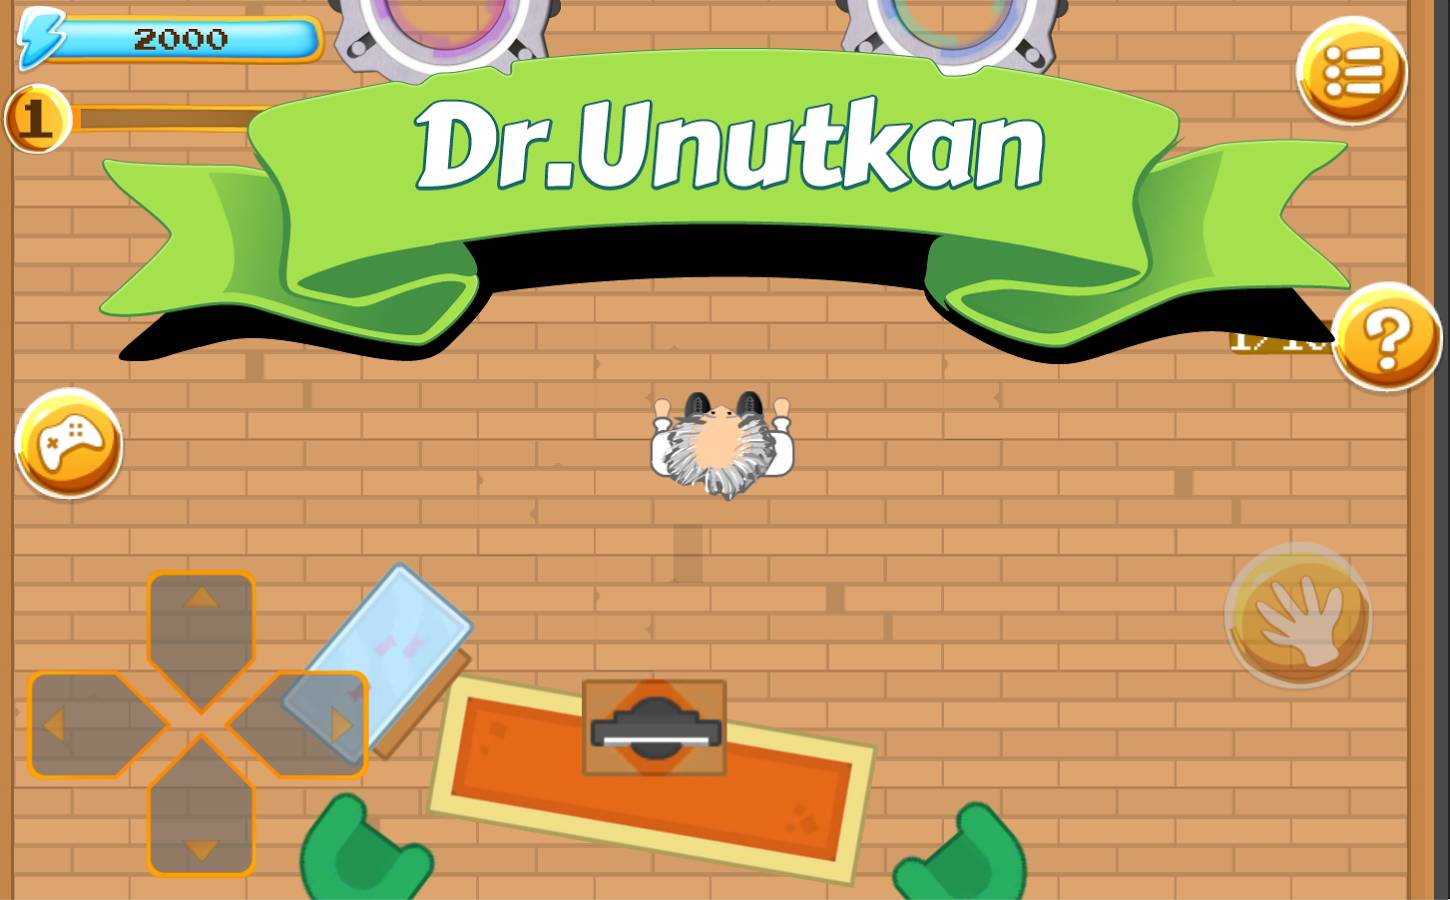 डाउनलोड करें Doctor Unutkan